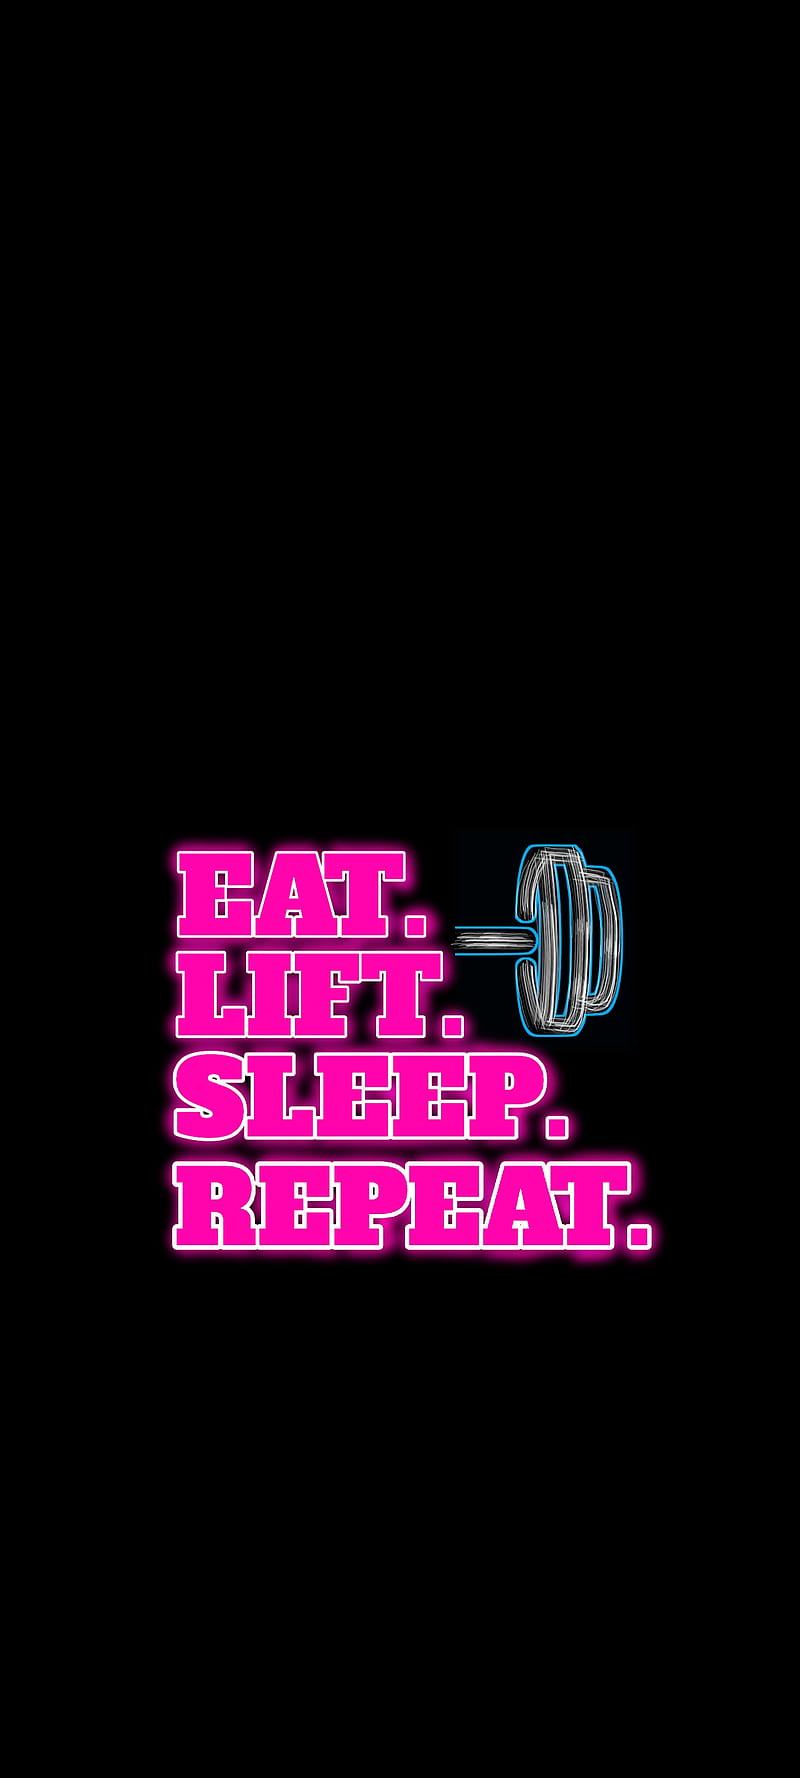 EatLiftSleepRepeat, sleep, amoled, fitness, motivation, repeat